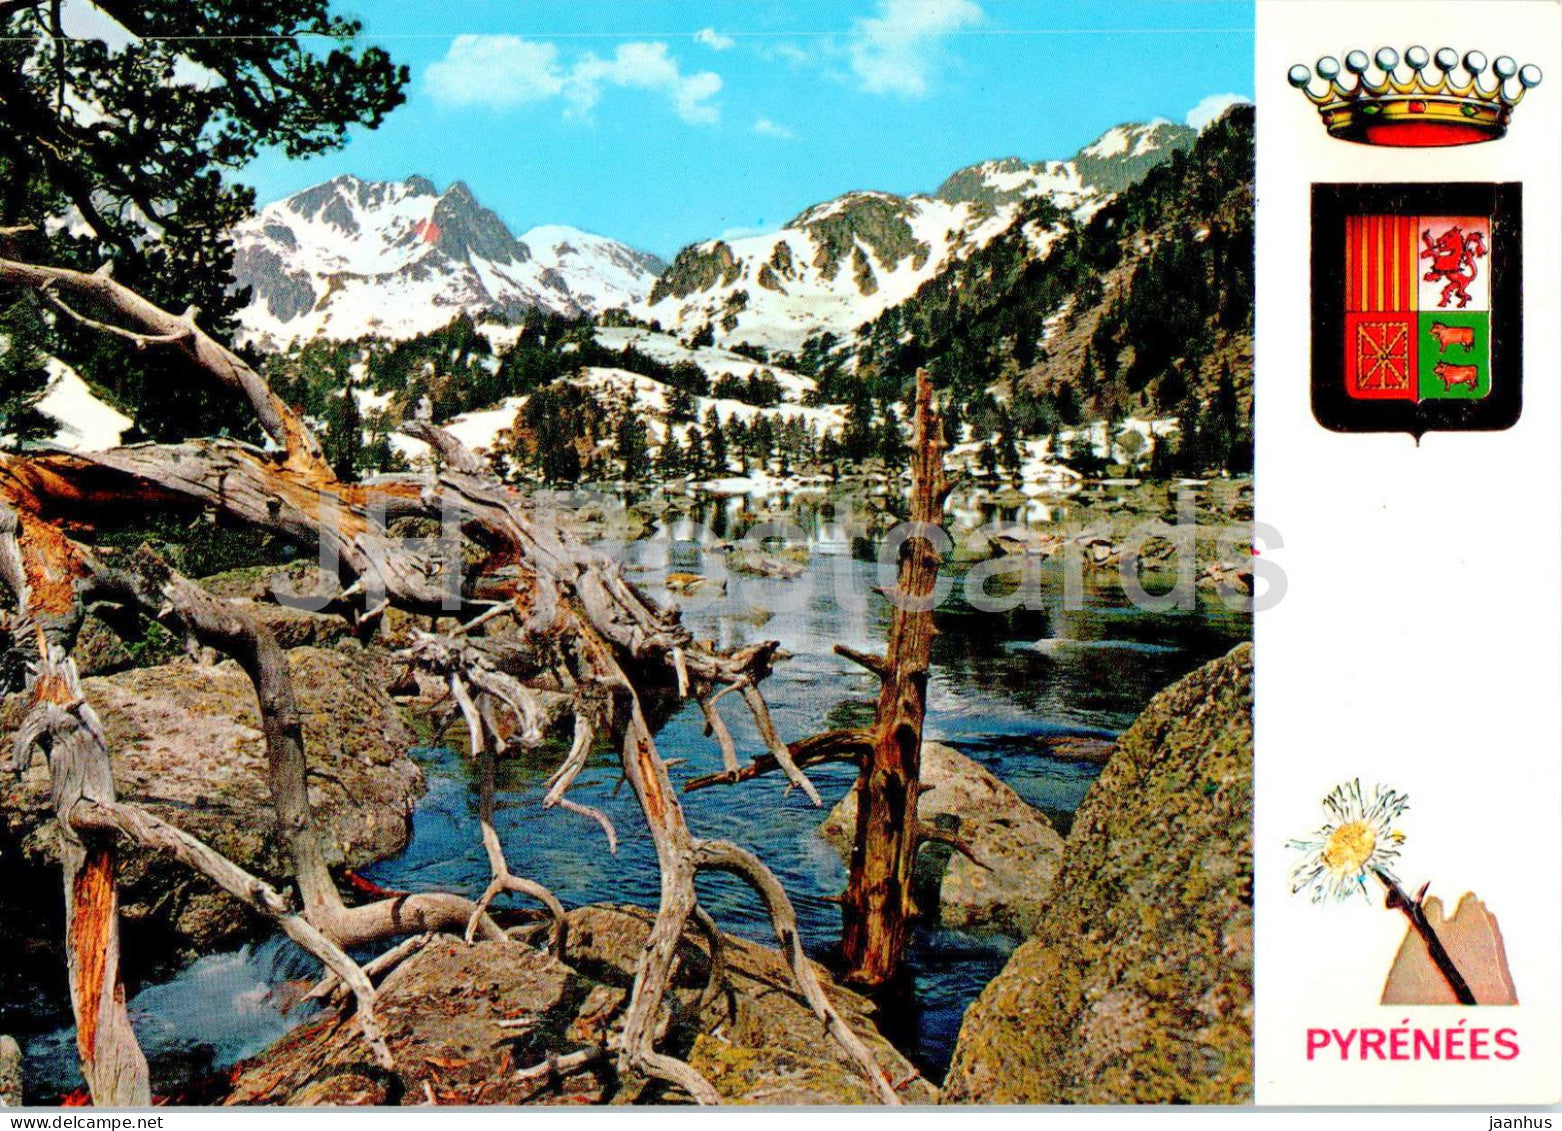 Lumiere et Couleurs des Pyrenees - Le haute montagne au printemps - France - used - JH Postcards